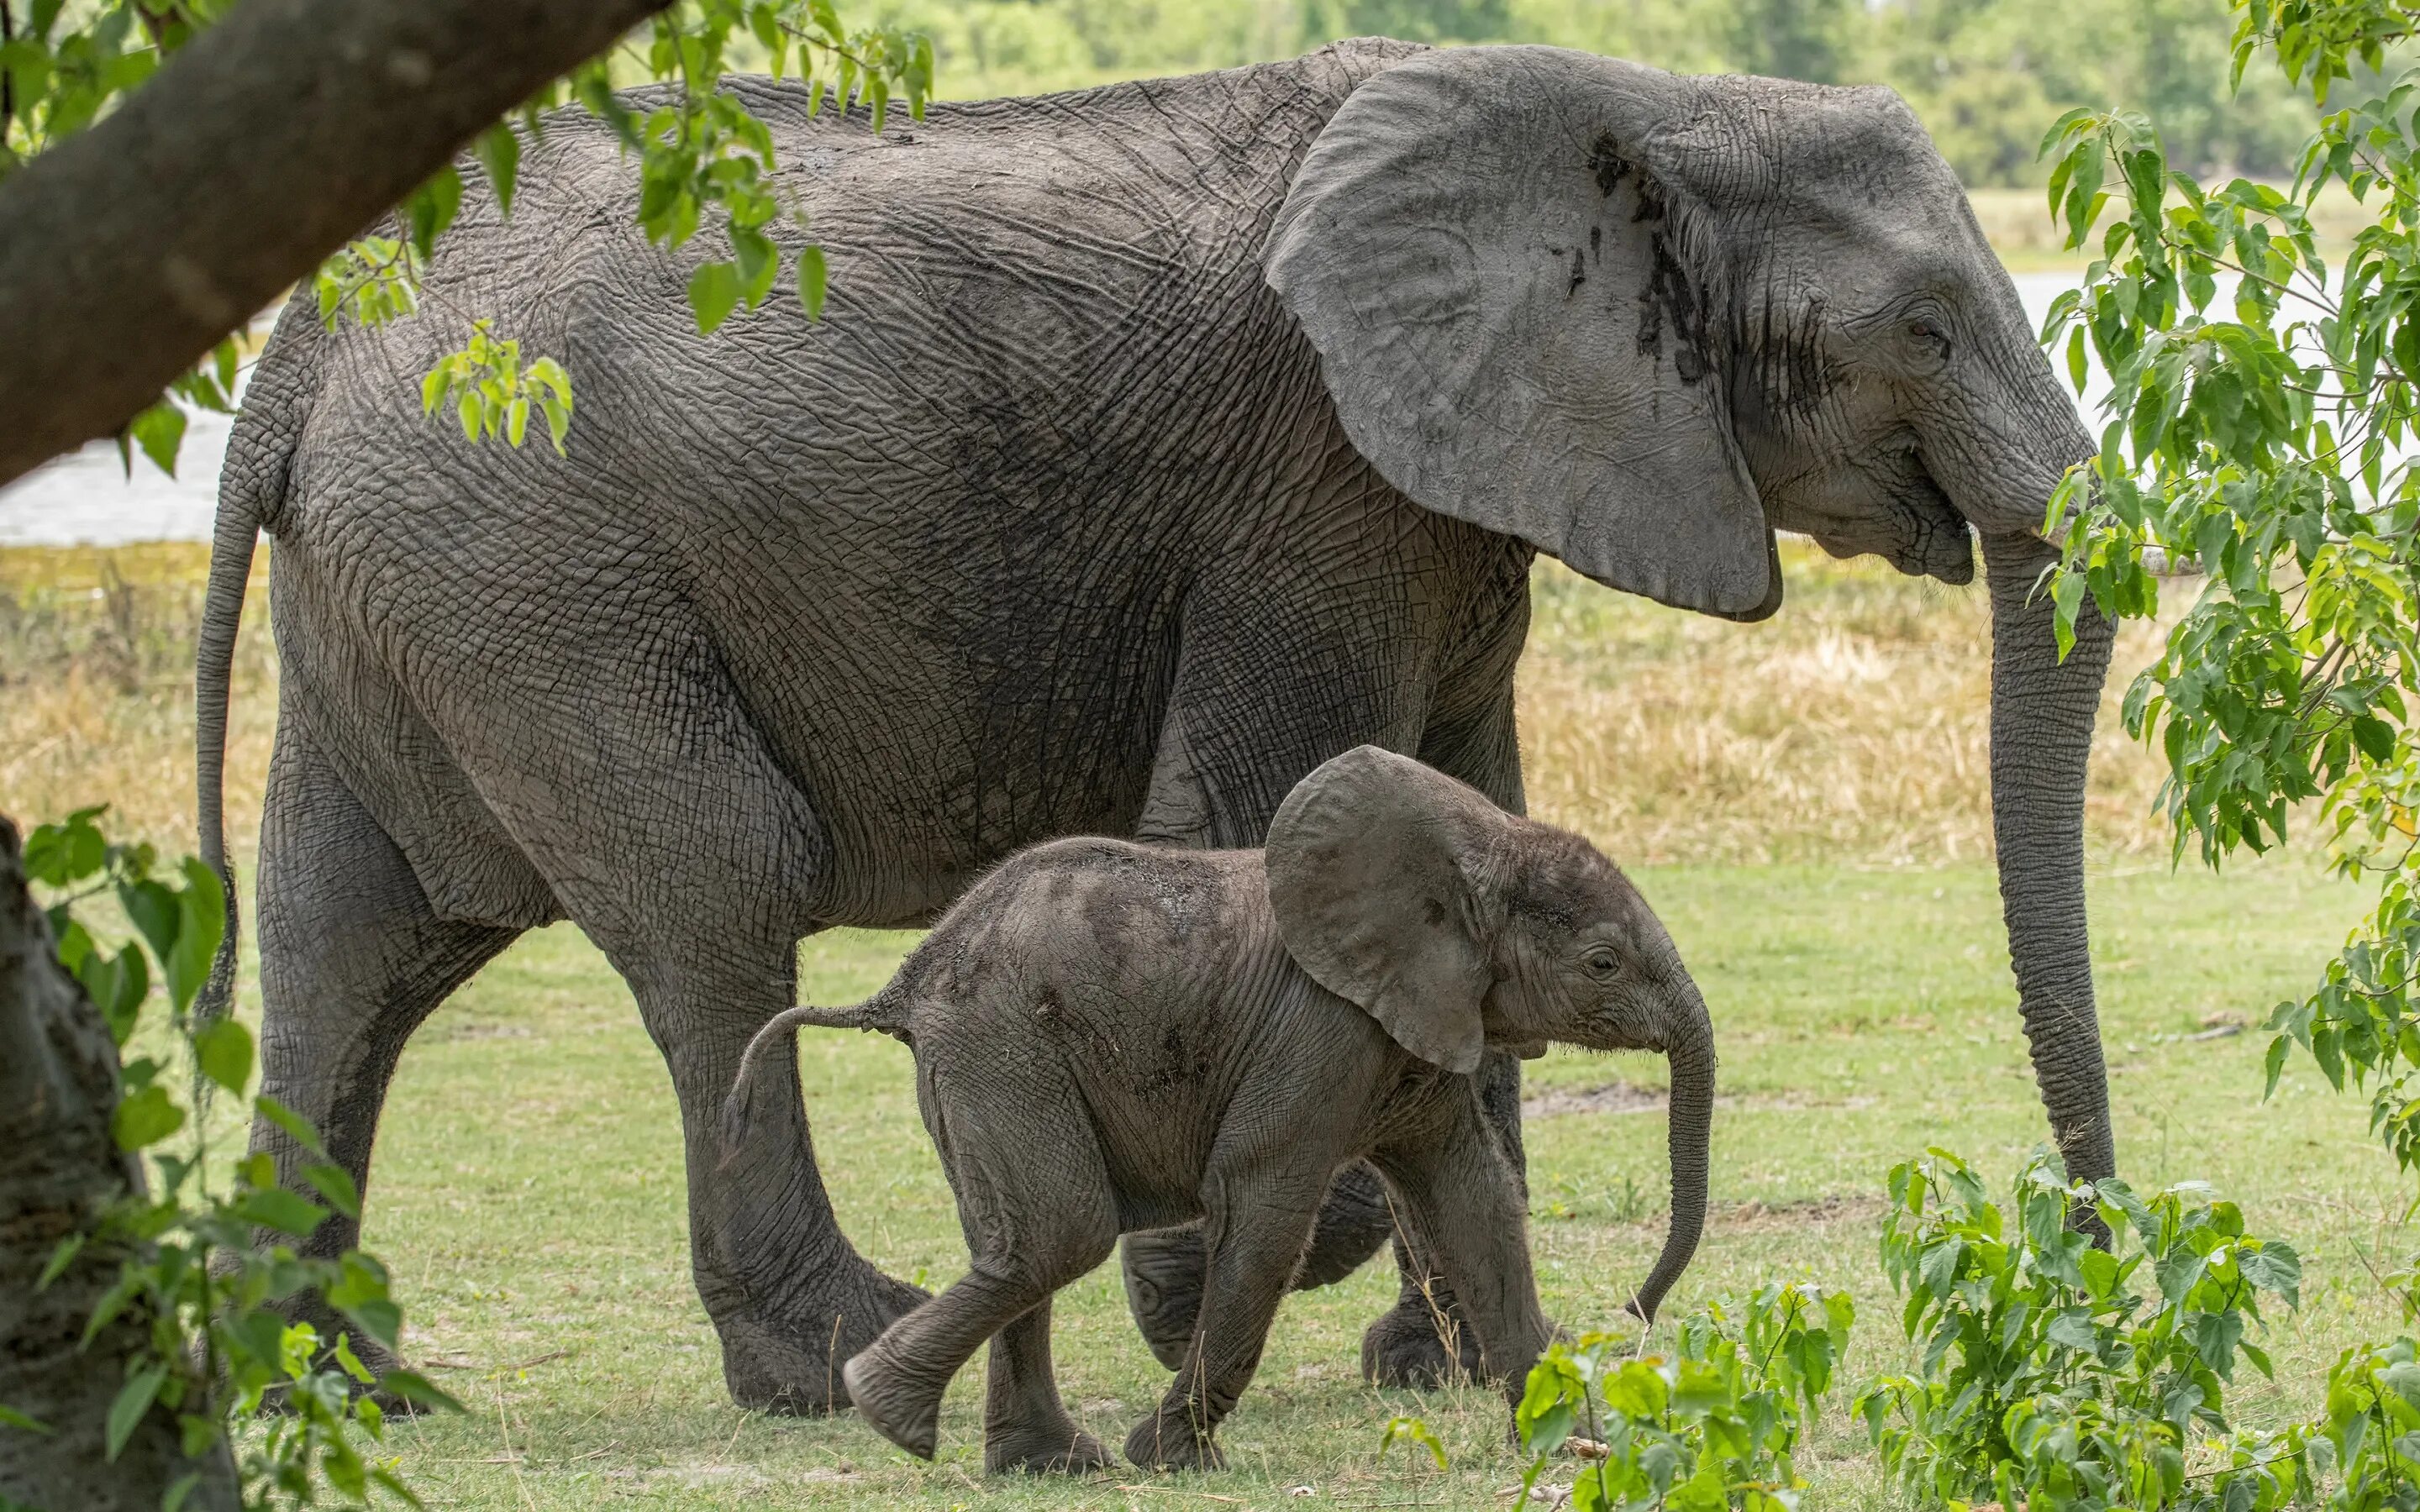 Sister elephant. Слон слониха Слоненок. Слон-Слоненок-Слонята. Слониха со слоненком. Слониха и Слоненок для детей.